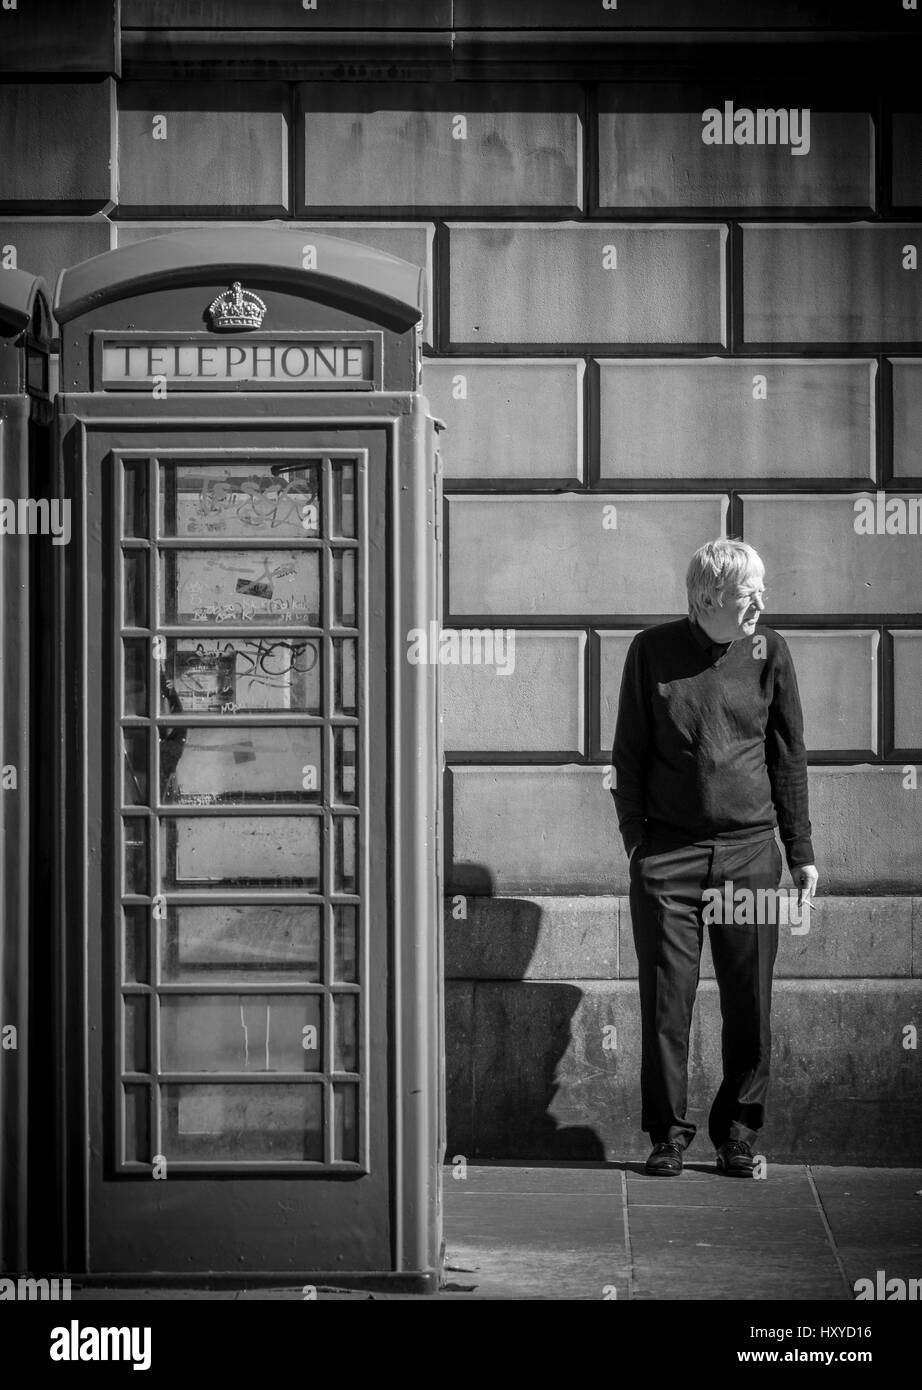 Homme caucasien mature debout à côté d'une boîte téléphonique traditionnelle fumant une cigarette. Édimbourg. ROYAUME-UNI Banque D'Images